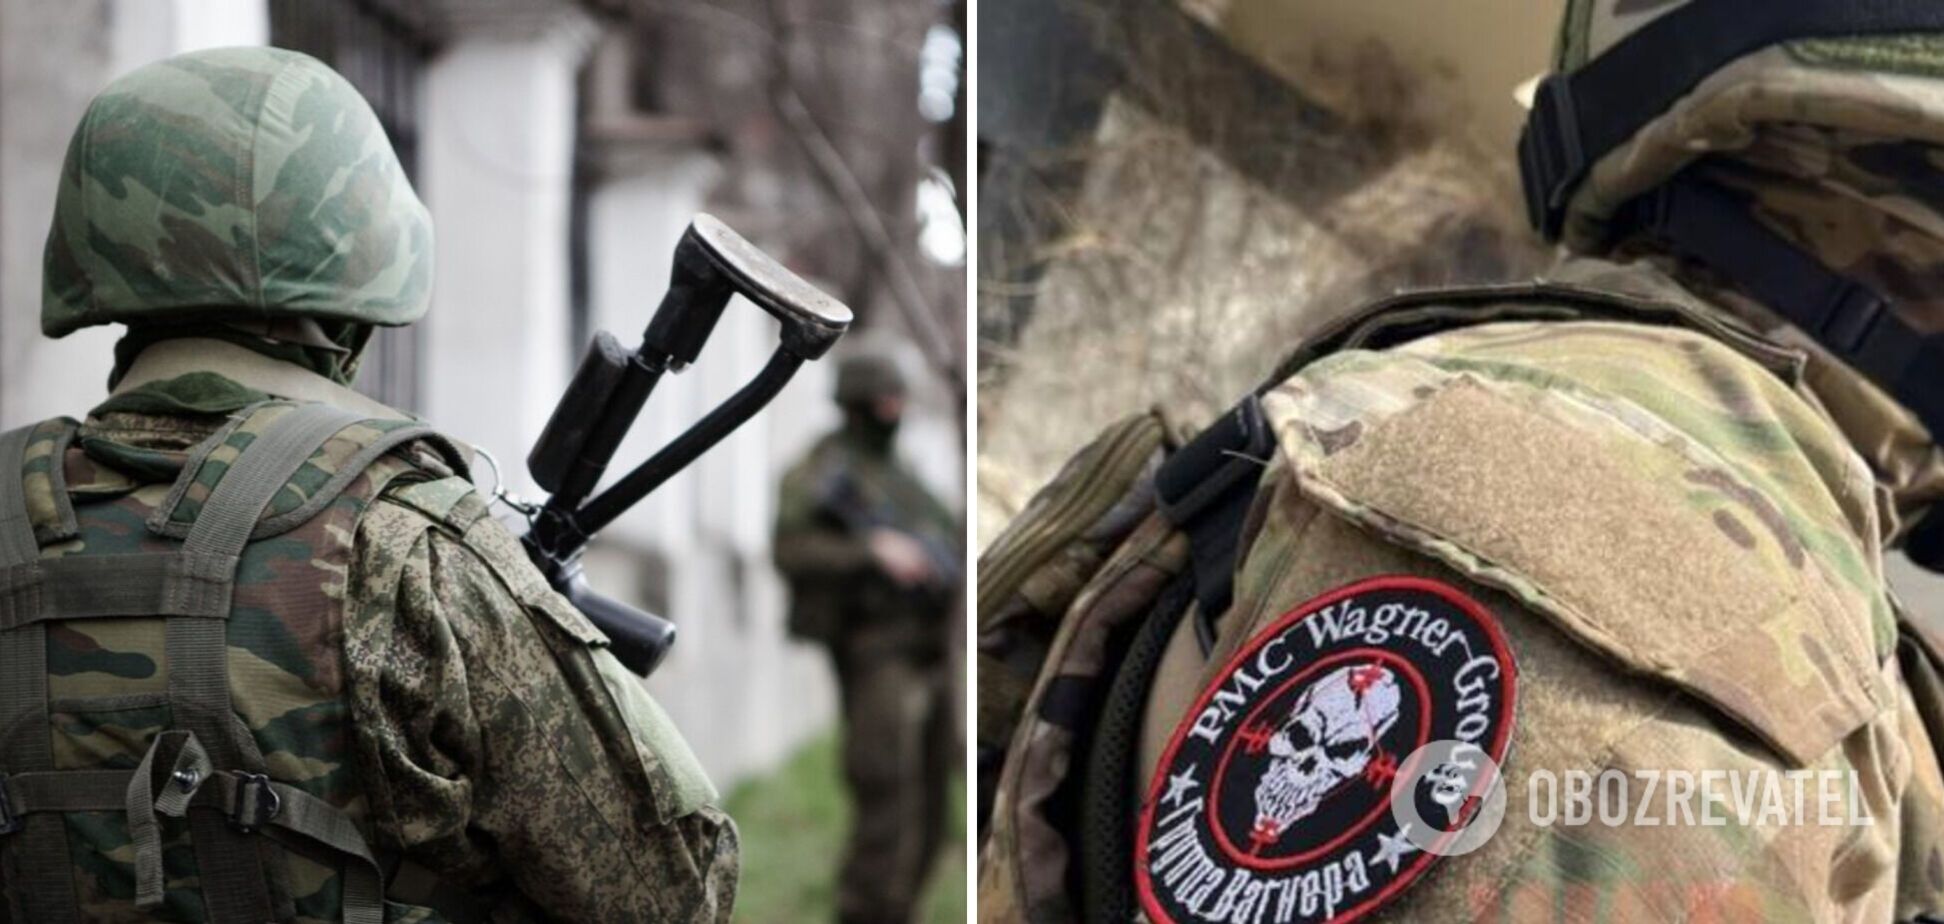 Минус 18 захватчиков: пограничники показали ликвидированных 'вагнеровцев' и поздравили украинцев с Рождеством. Видео 21+